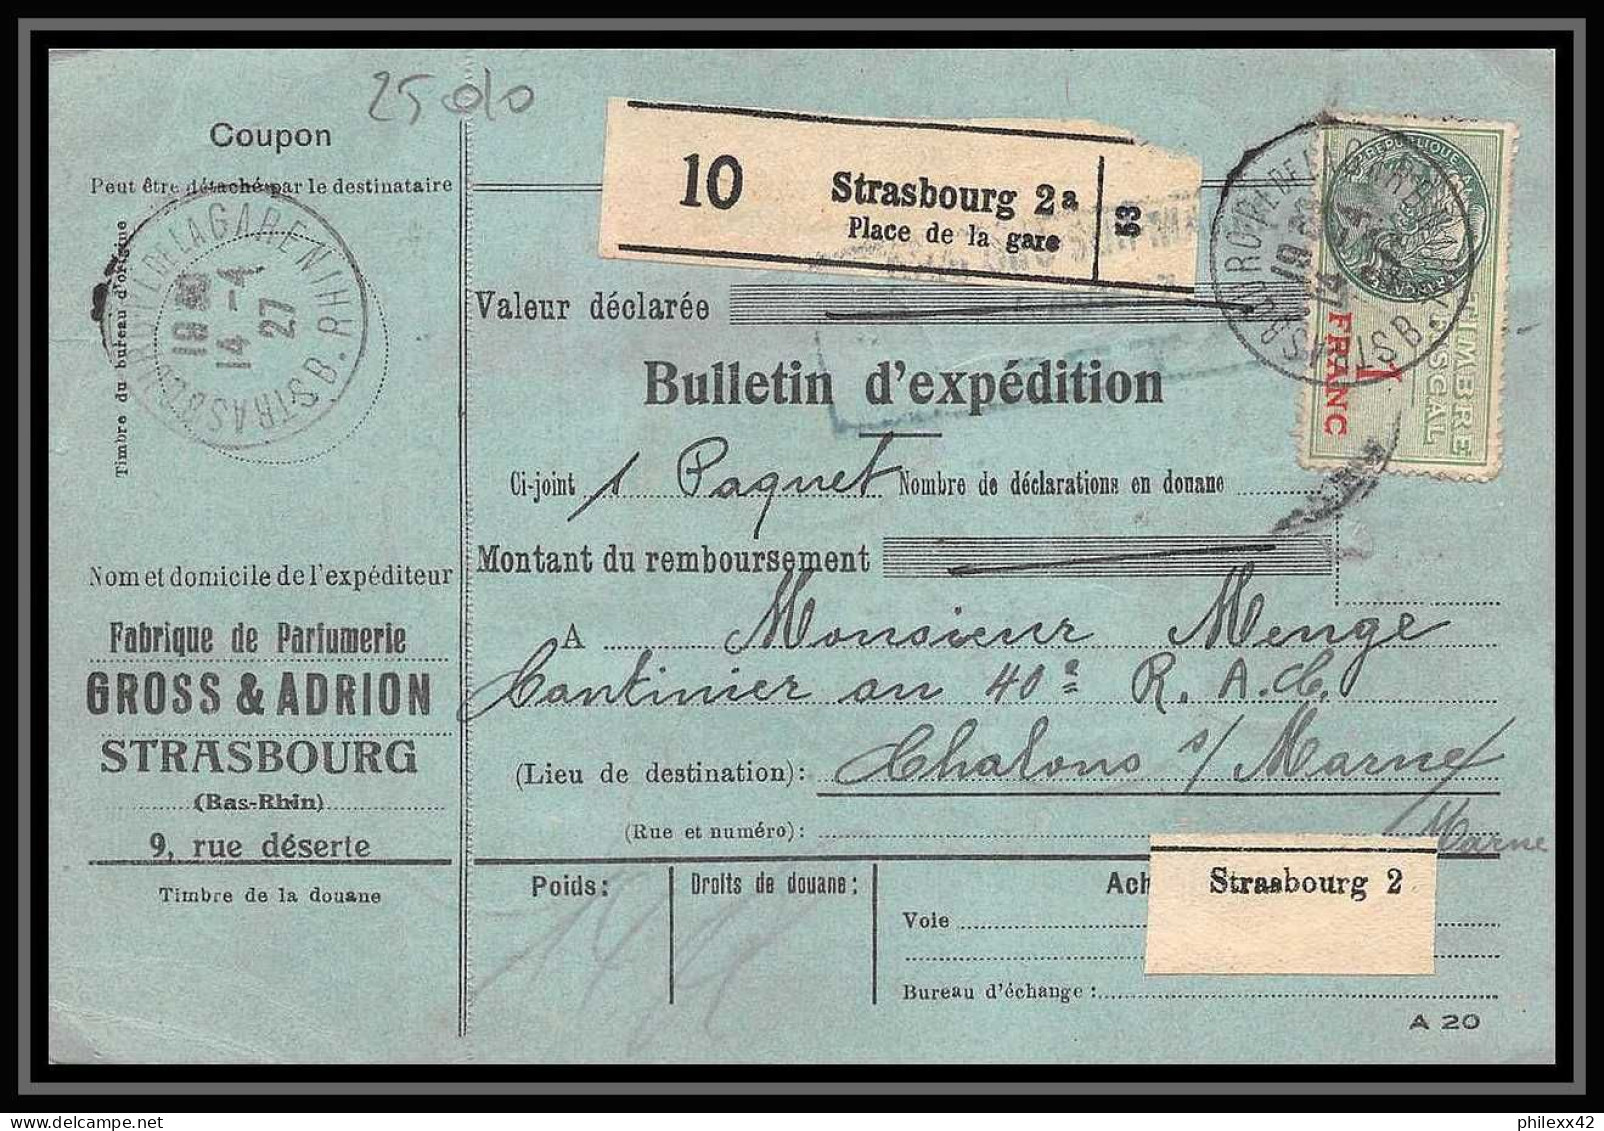 25010 Bulletin D'expédition France Colis Postaux Fiscal Haut Rhin - 1927 Strasbourg Merson 123+145 Alsace-Lorraine  - Covers & Documents